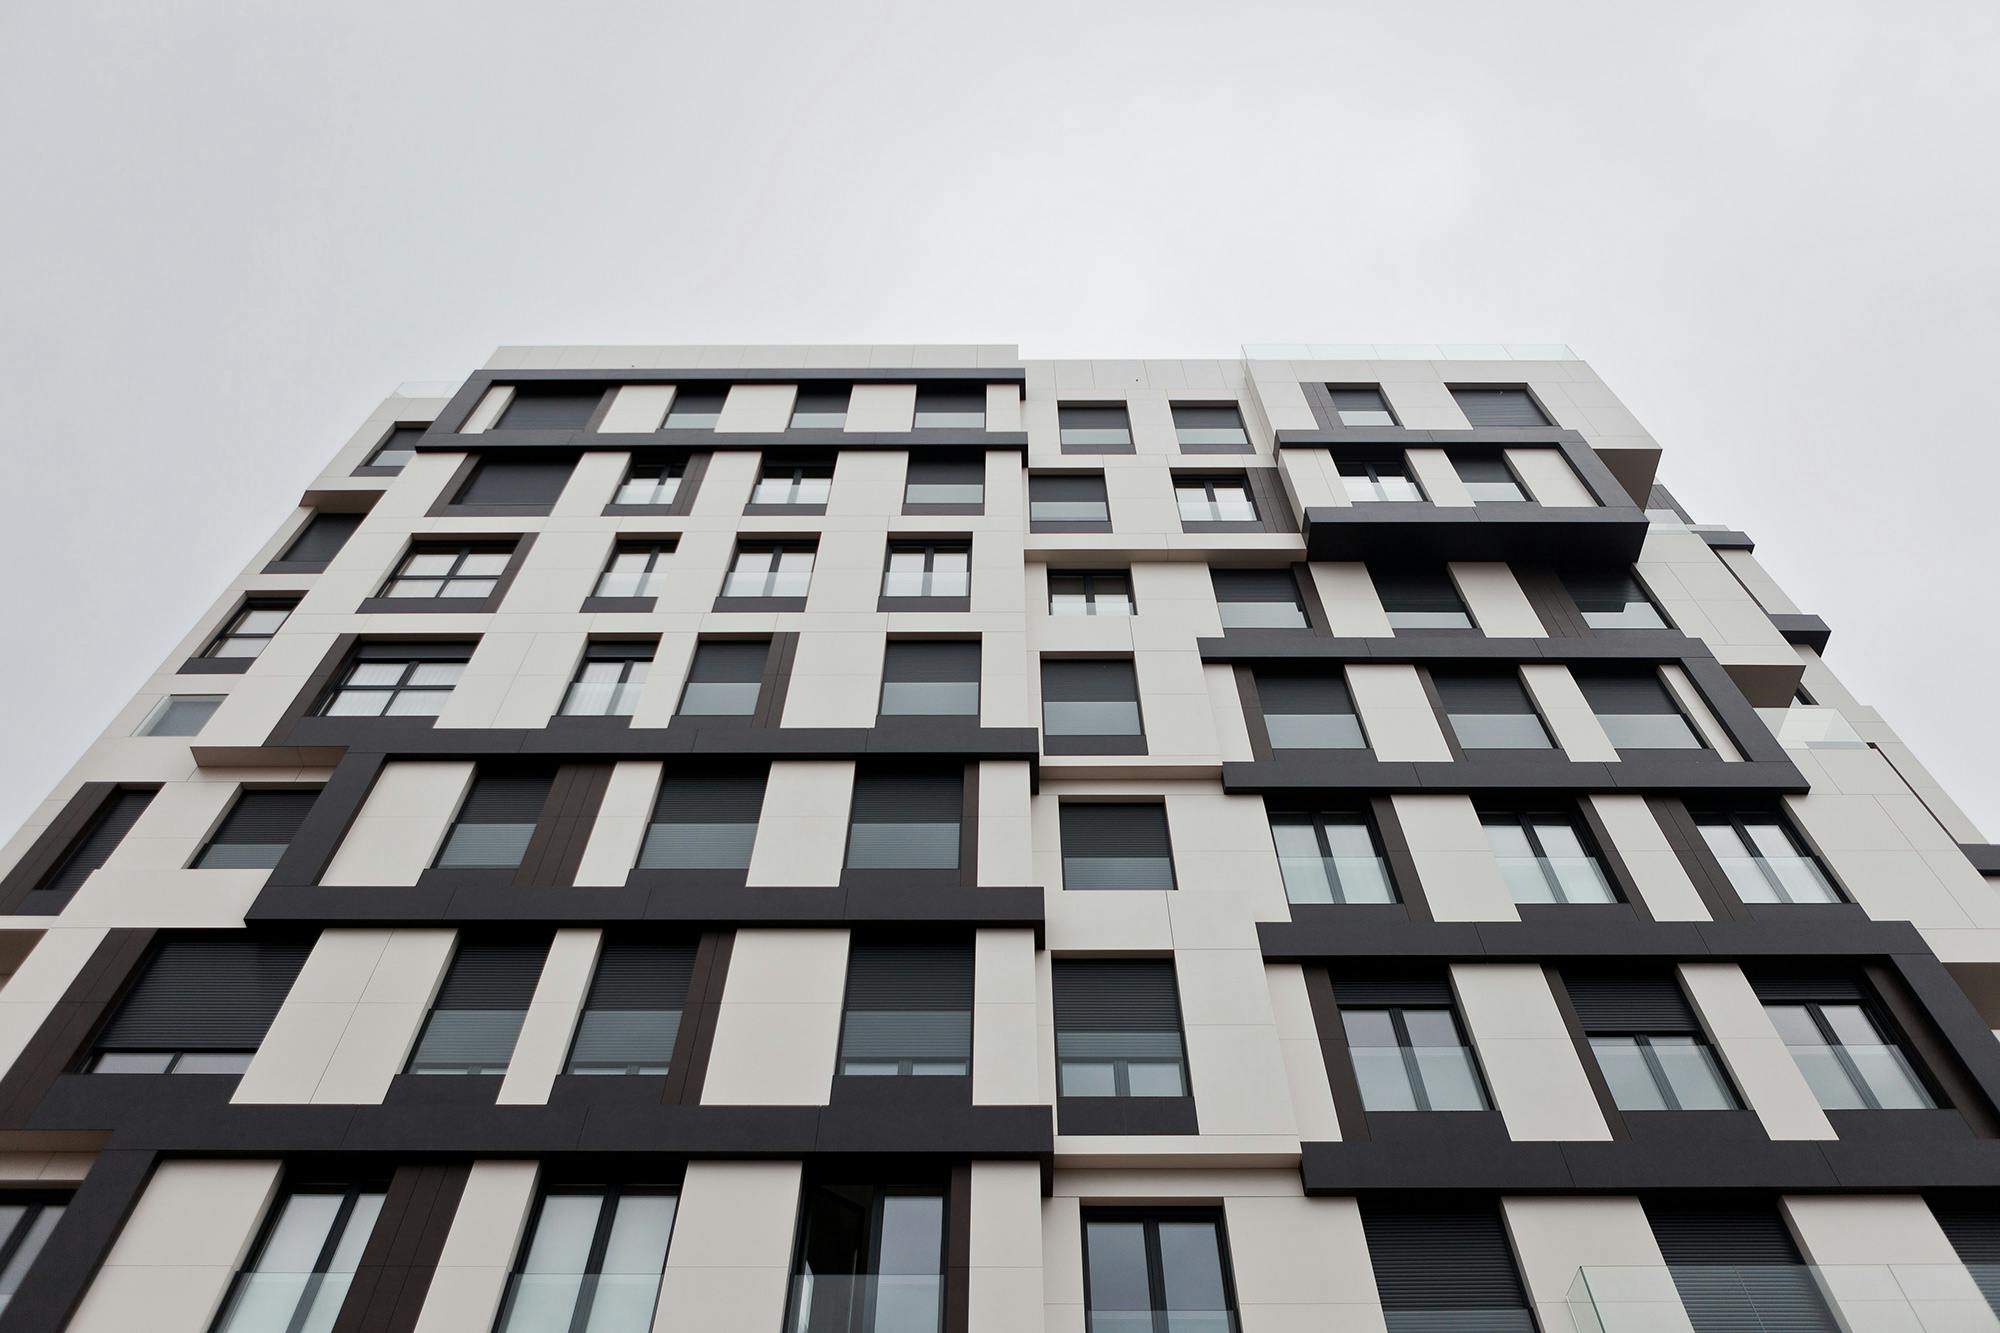 Bildnummer 32 des aktuellen Abschnitts von {{A state-of-the-art building in Lugo chooses Dekton to clad its complex façade}} von Cosentino Deutschland